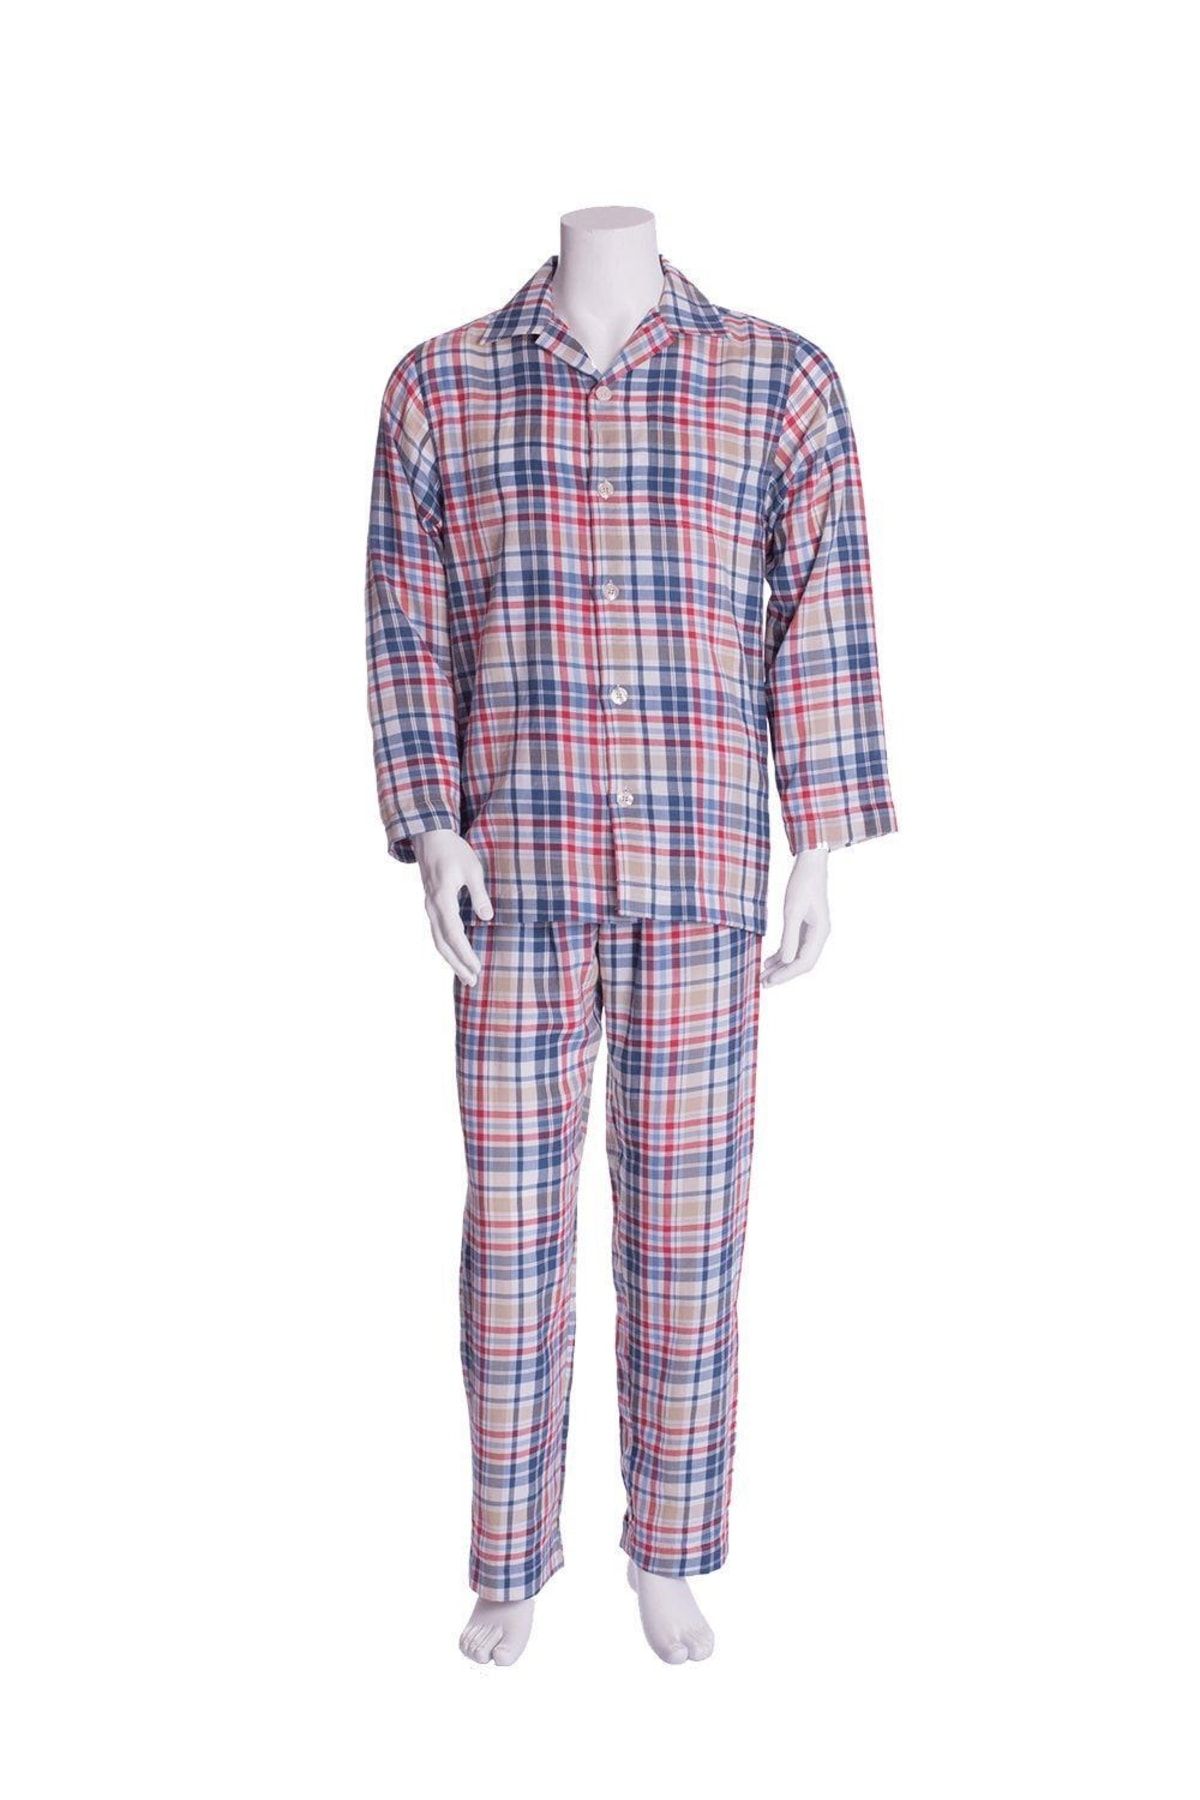 TheDon The Don Poplin Erkek Pijama Takımı Desen 27